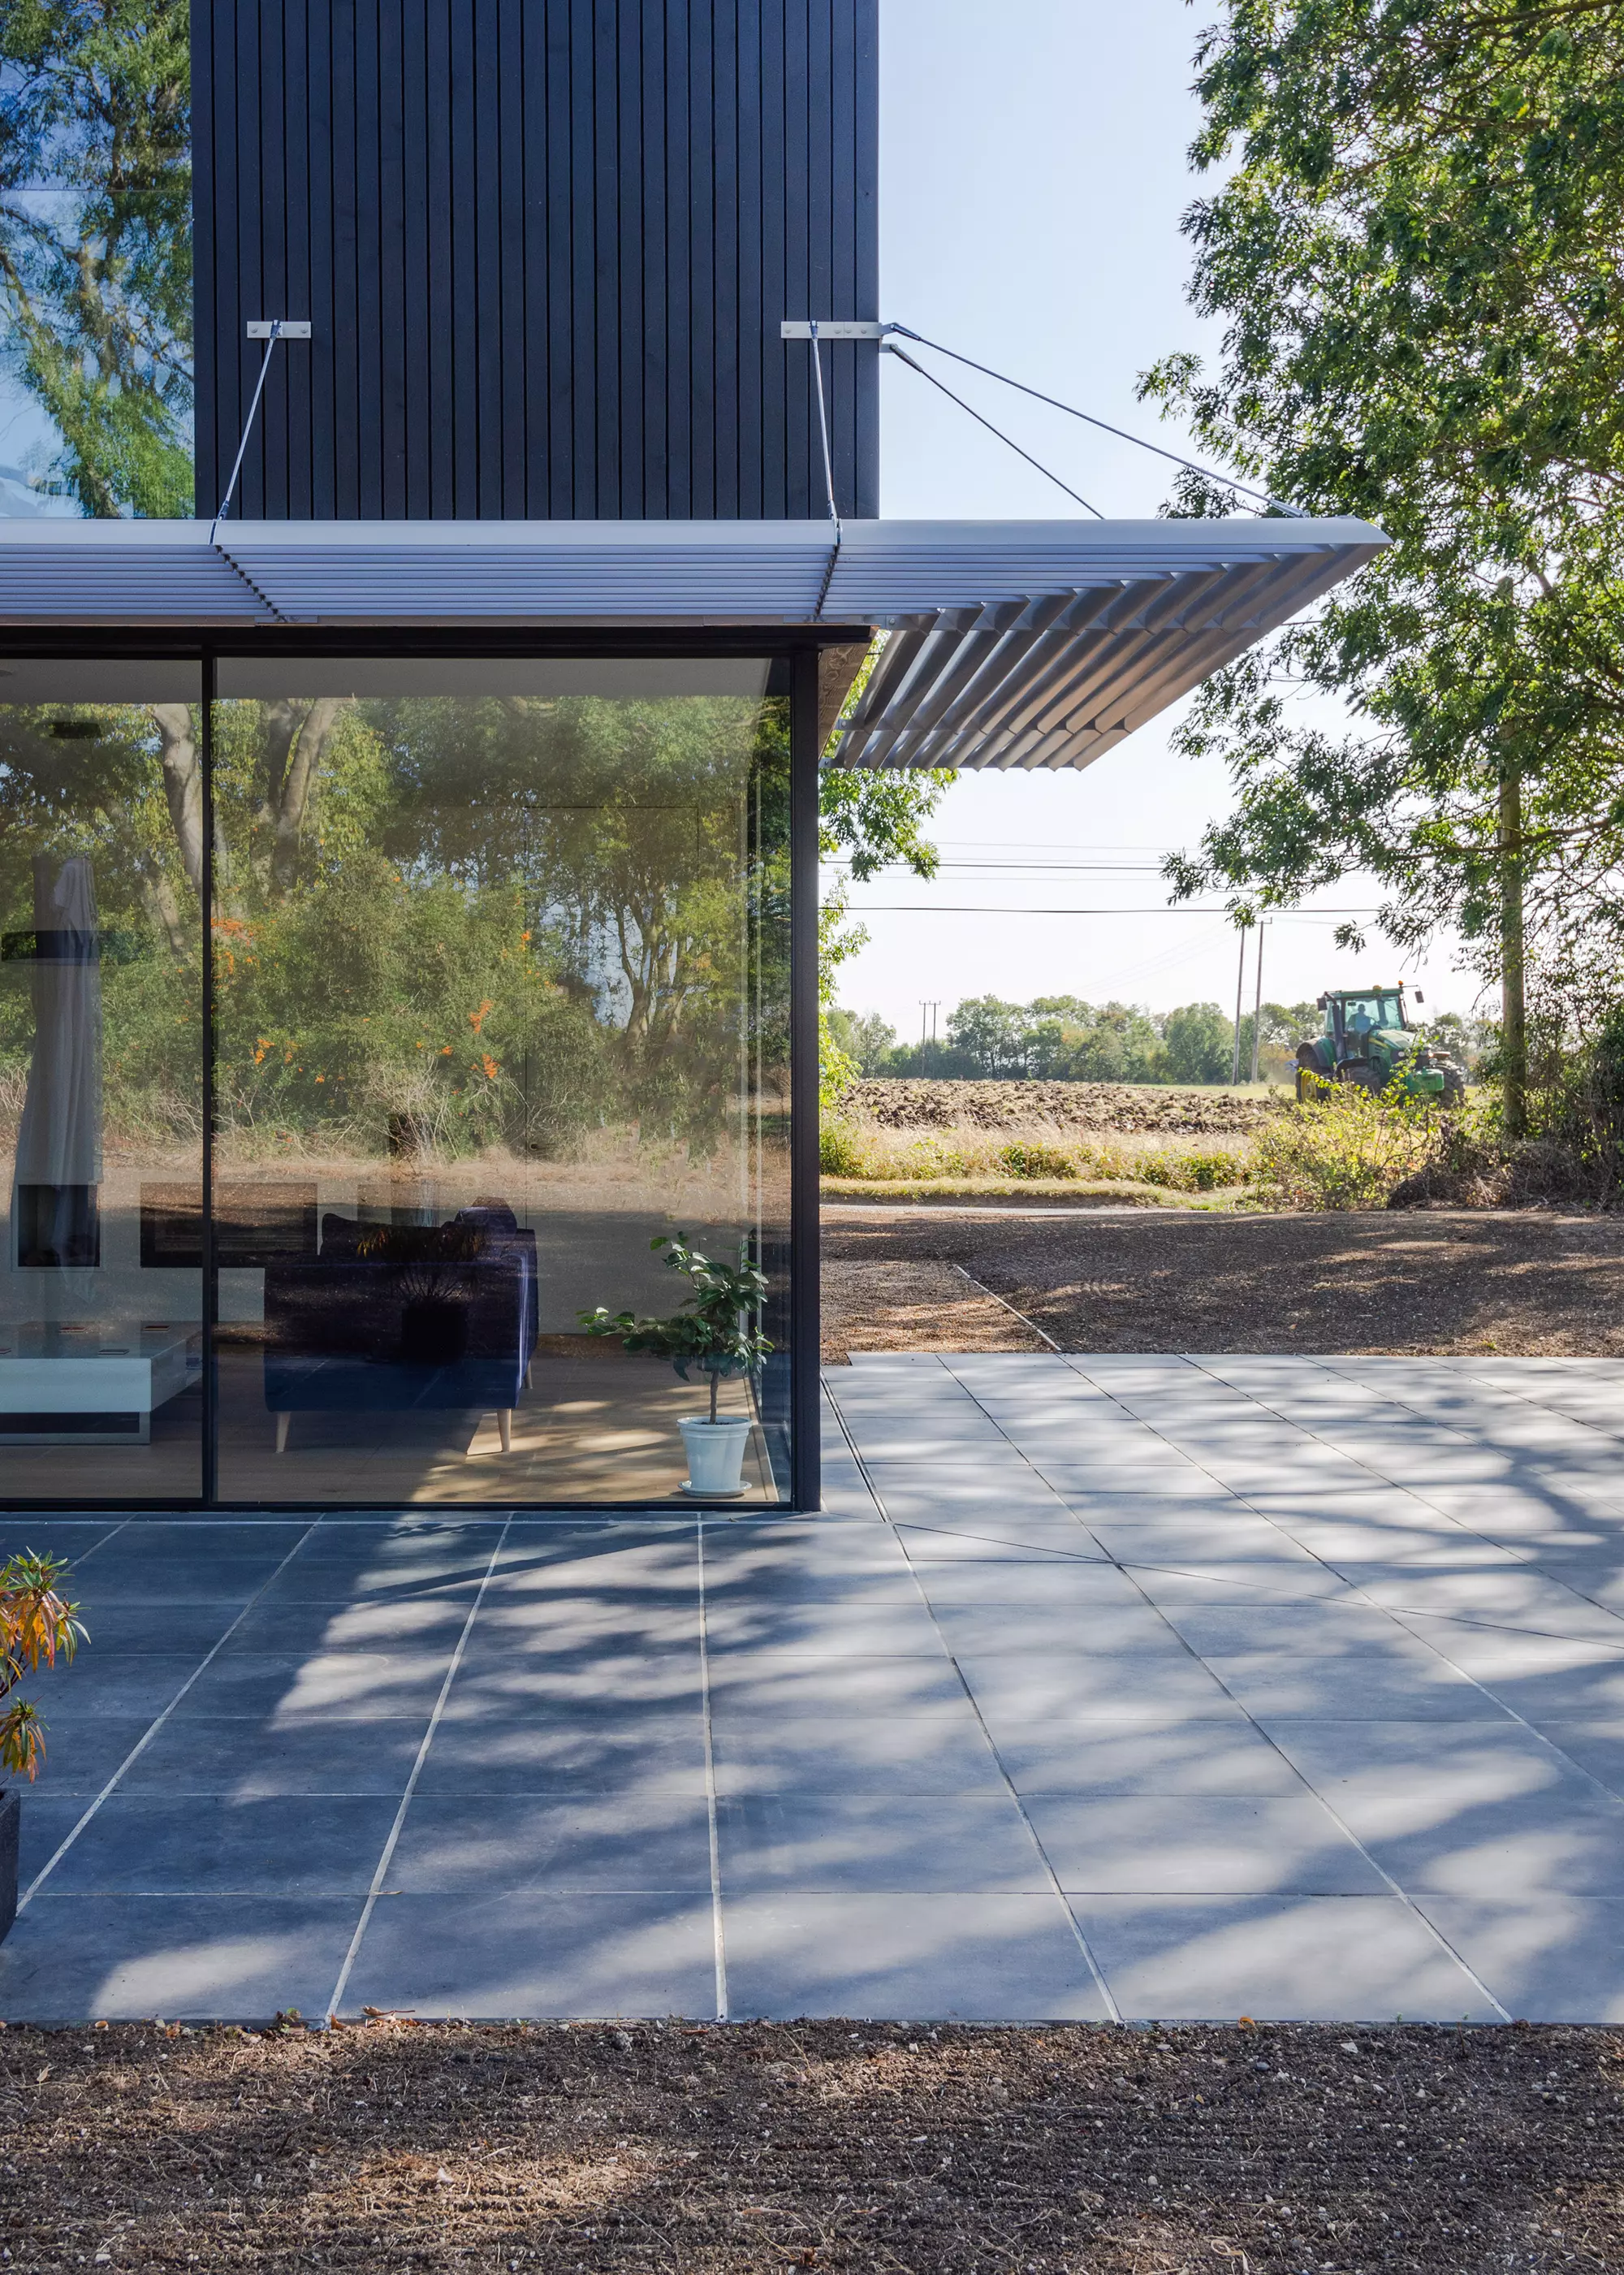 aluminium brise soleil shading over living space and patio area